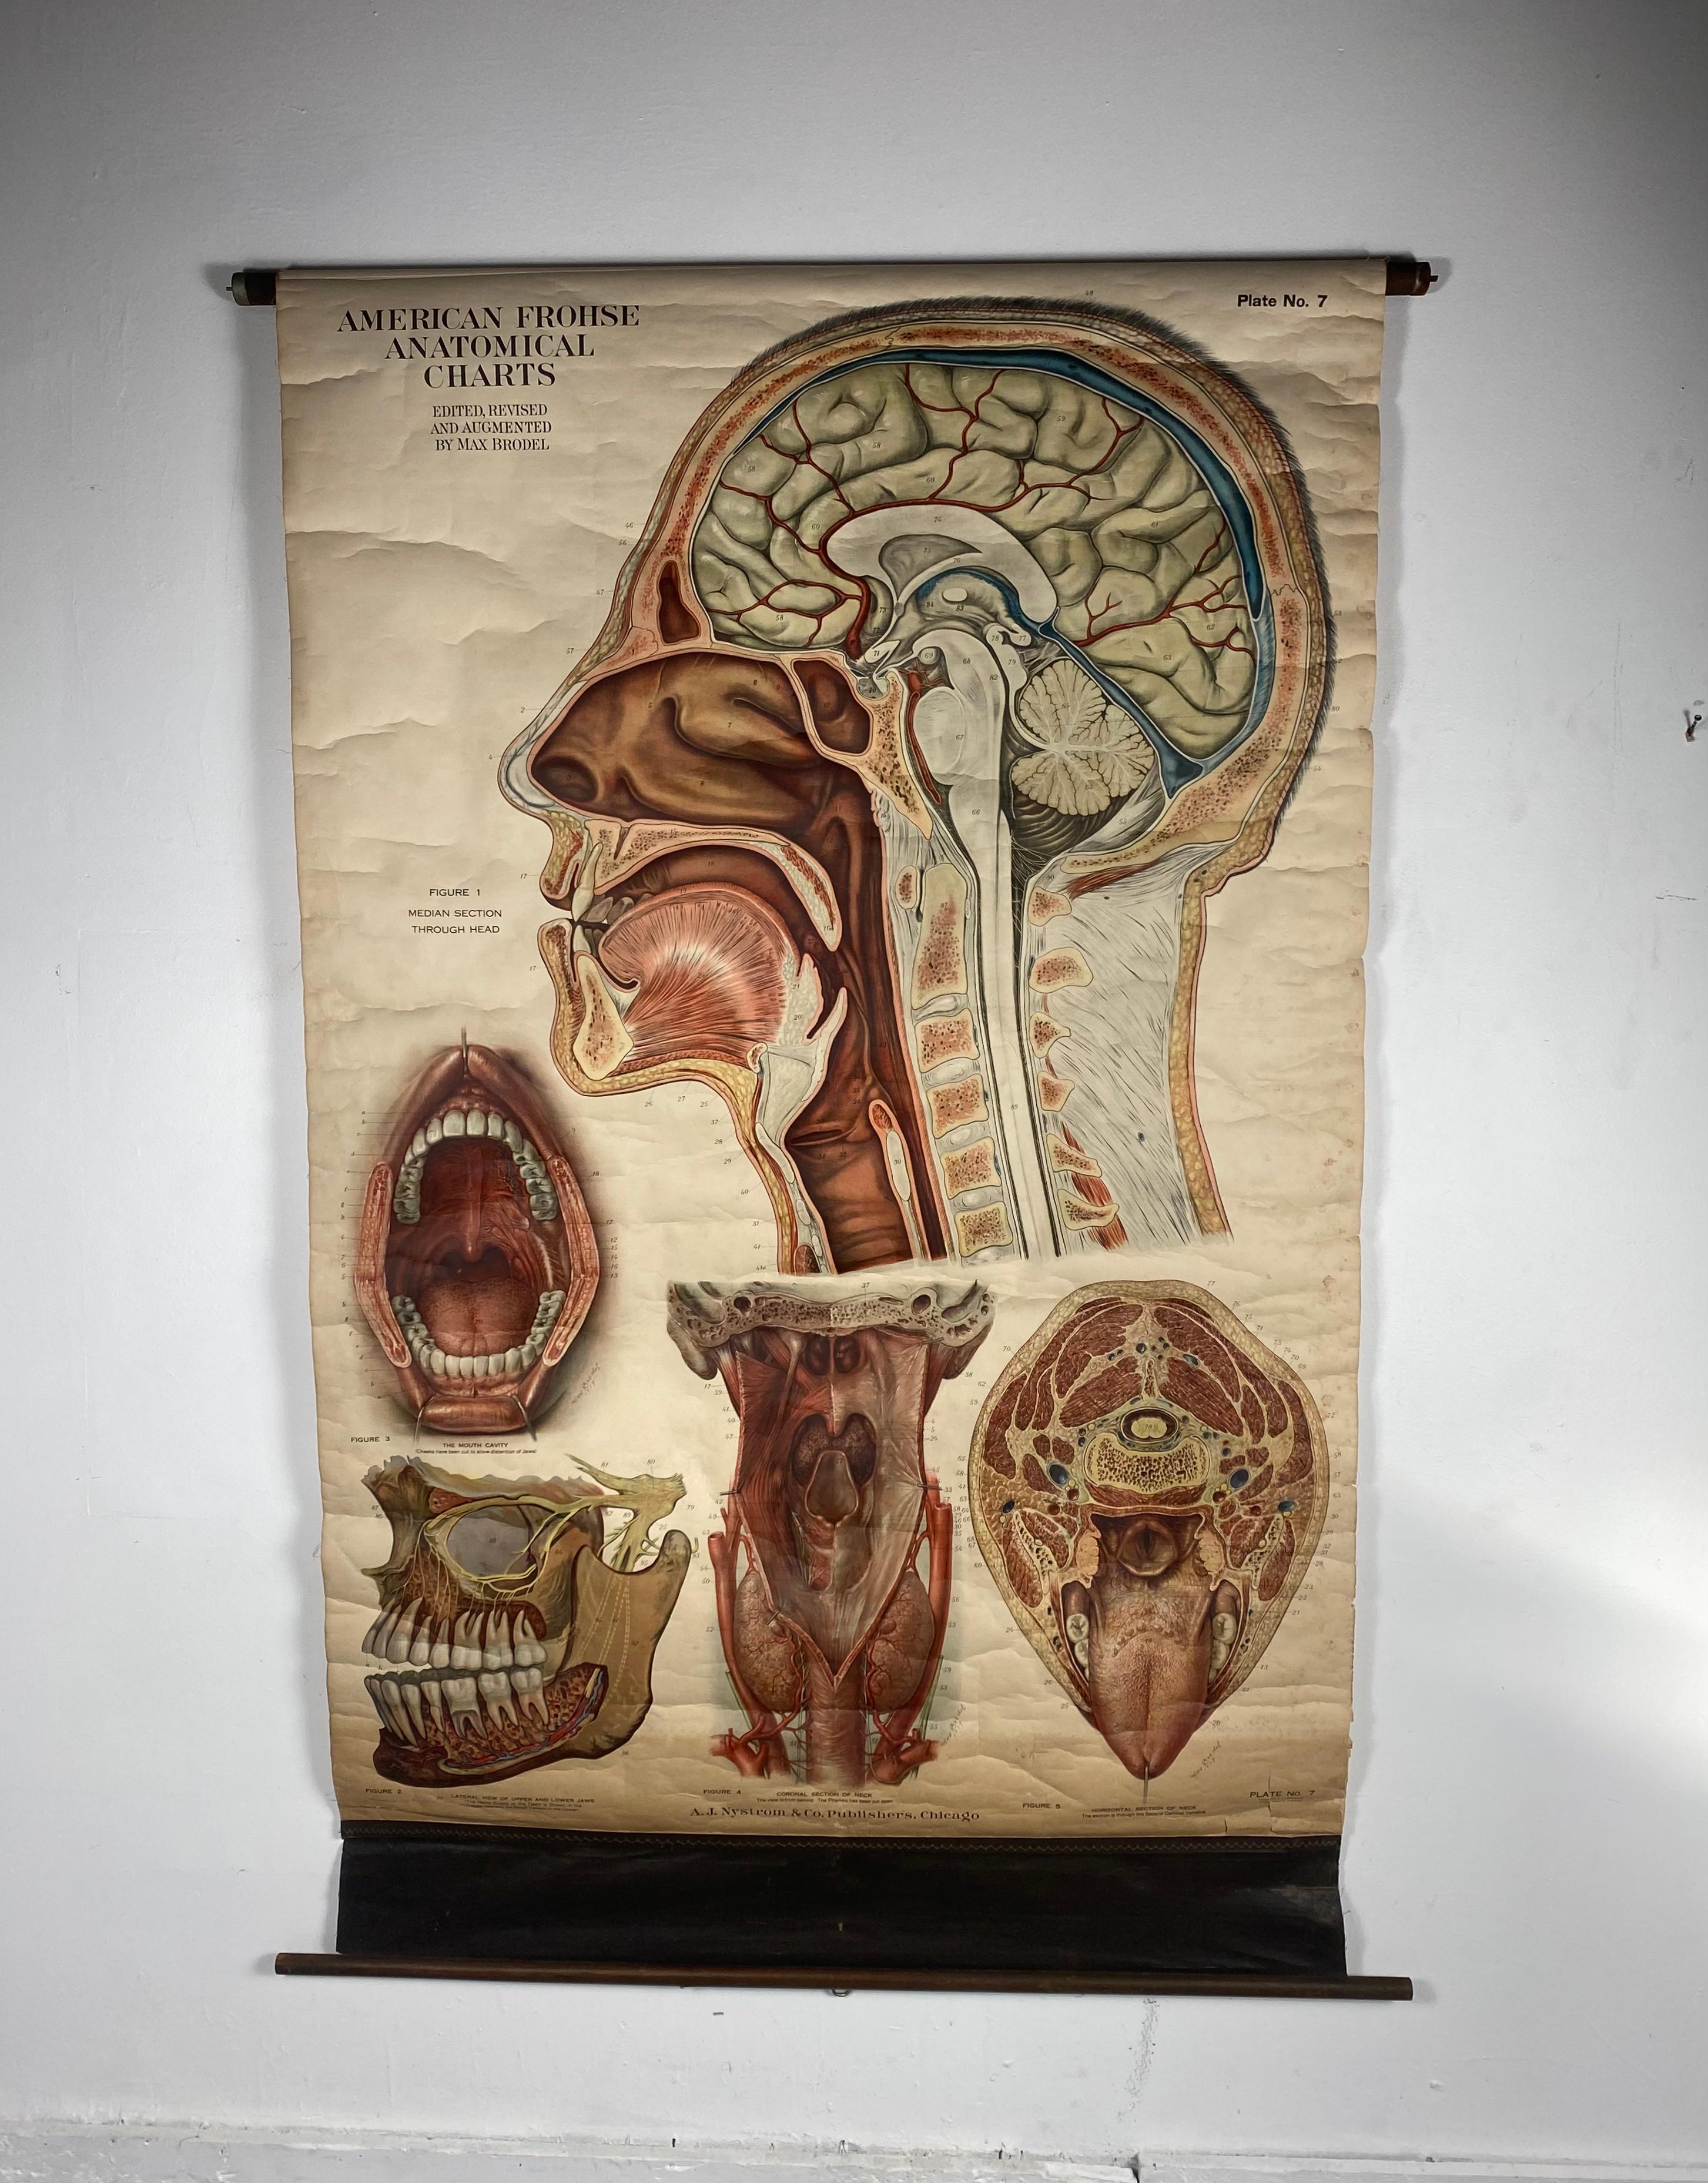 Antica tavola anatomica americana Frohse, di A. J. Nystrom, rivista e aumentata da Max Brodel, illustratore... Colore incredibile, patina, usura appropriata all'età. datato 1918...
Max (Paul Heinrich) Brödel
1870-1941
Brödel, illustratore e primo